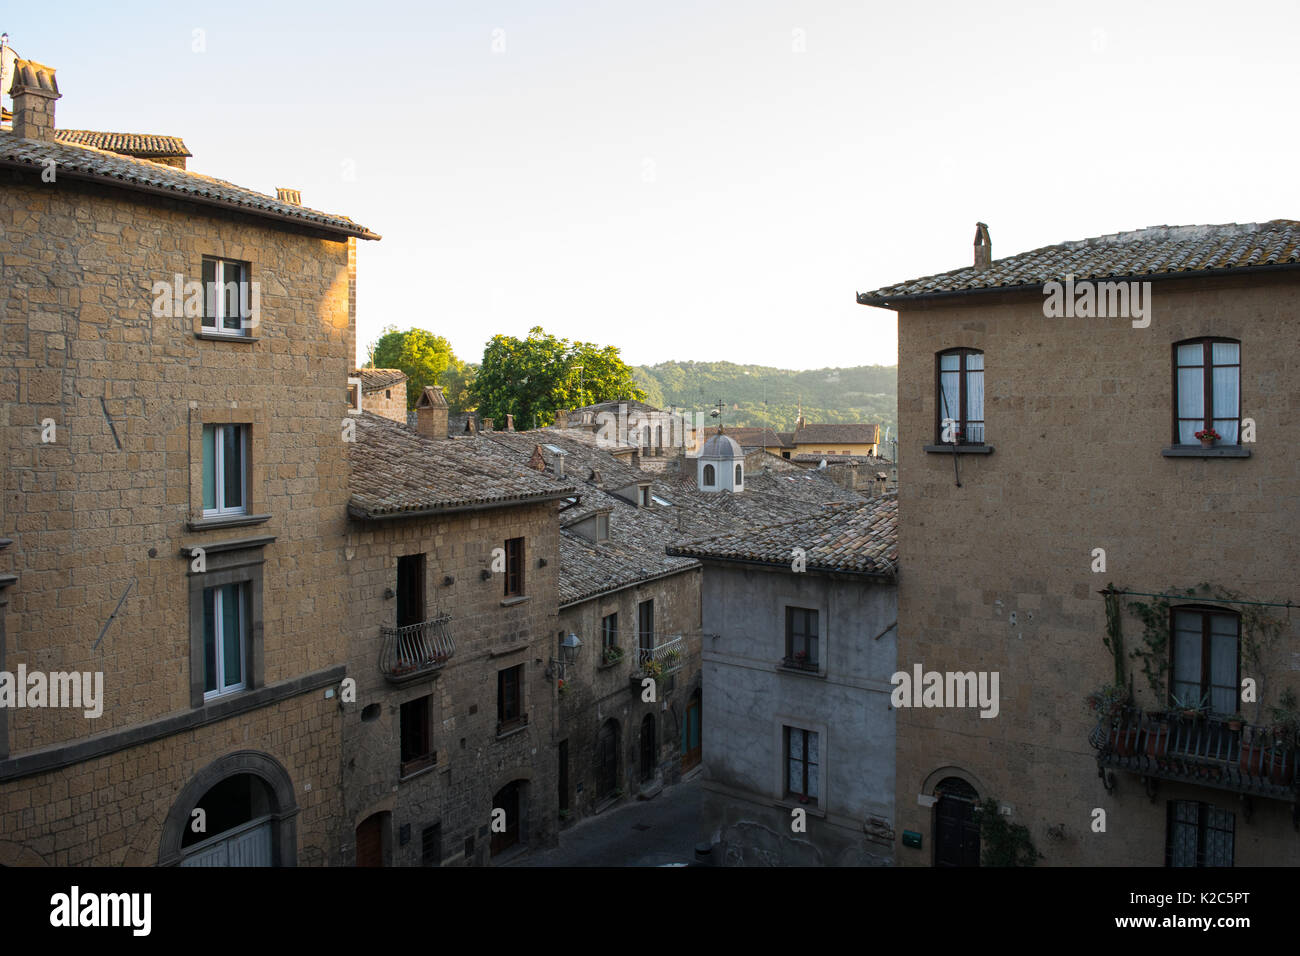 Les vieilles maisons, les bâtiments et les rues dans la paisible ville d'Orvieto, Ombrie, Italie. Maisons en pierre, avec de vieux caractère médiéval et l'apparence Banque D'Images